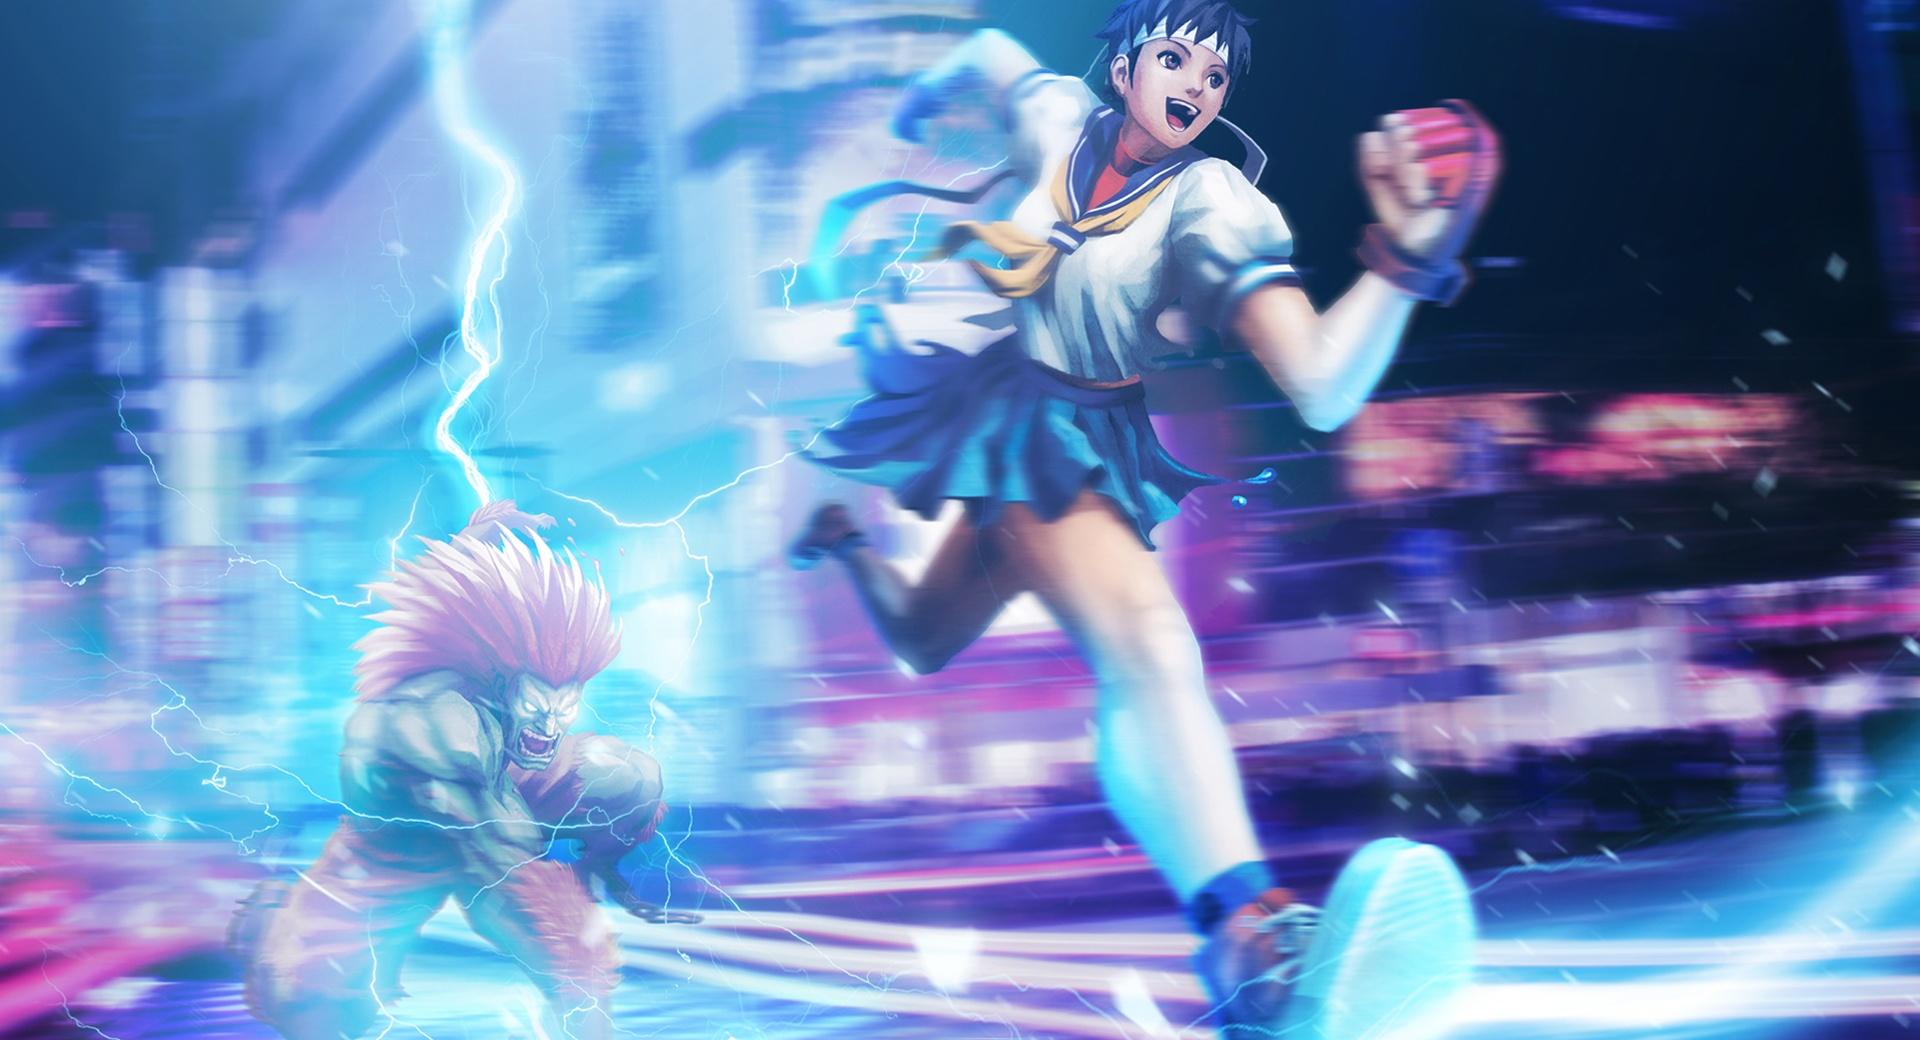 Street Fighter X Tekken - Sakura Blanka at 2048 x 2048 iPad size wallpapers HD quality